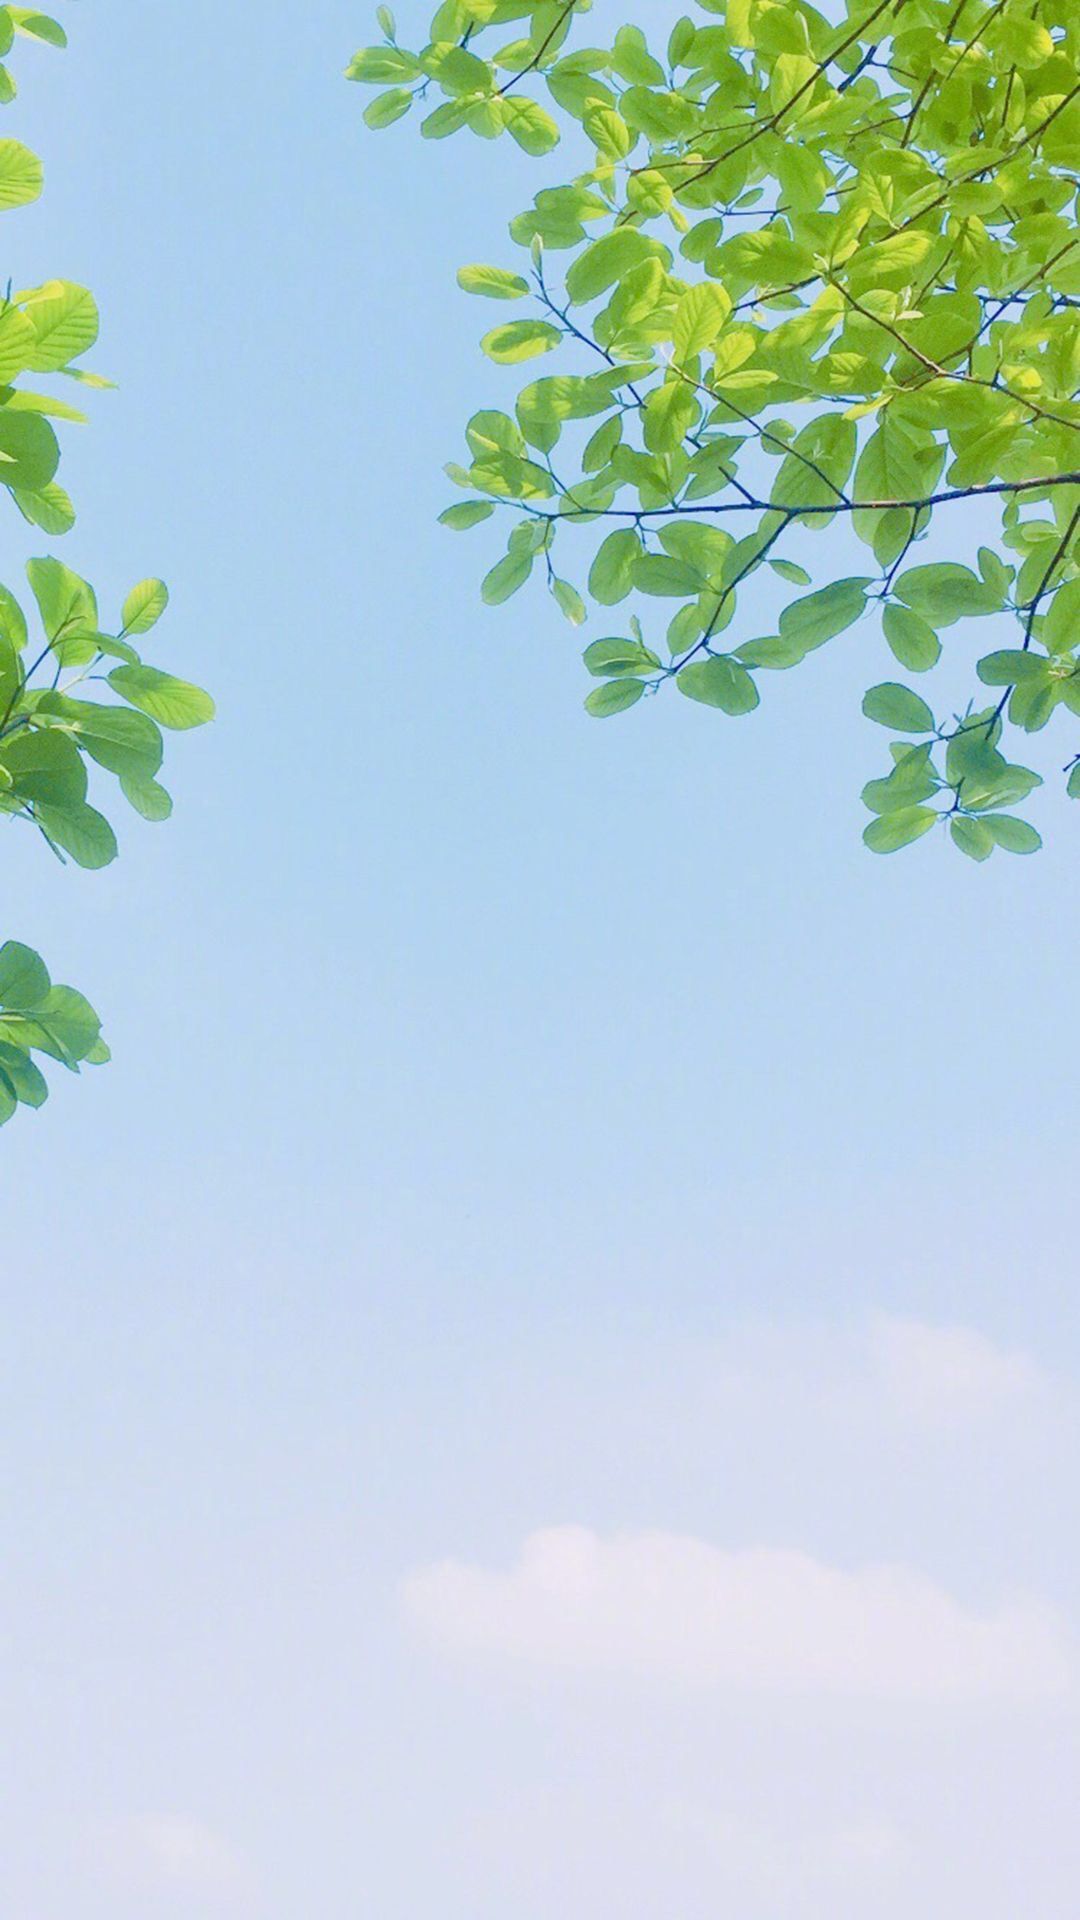 Hình Nền Lá Cây: Nếu bạn là một người yêu thiên nhiên và muốn tận hưởng không gian sống với cây xanh thì hình nền lá cây đẹp này chính là lựa chọn hoàn hảo. Hình ảnh giúp bạn thư giãn và tràn đầy sức sống.